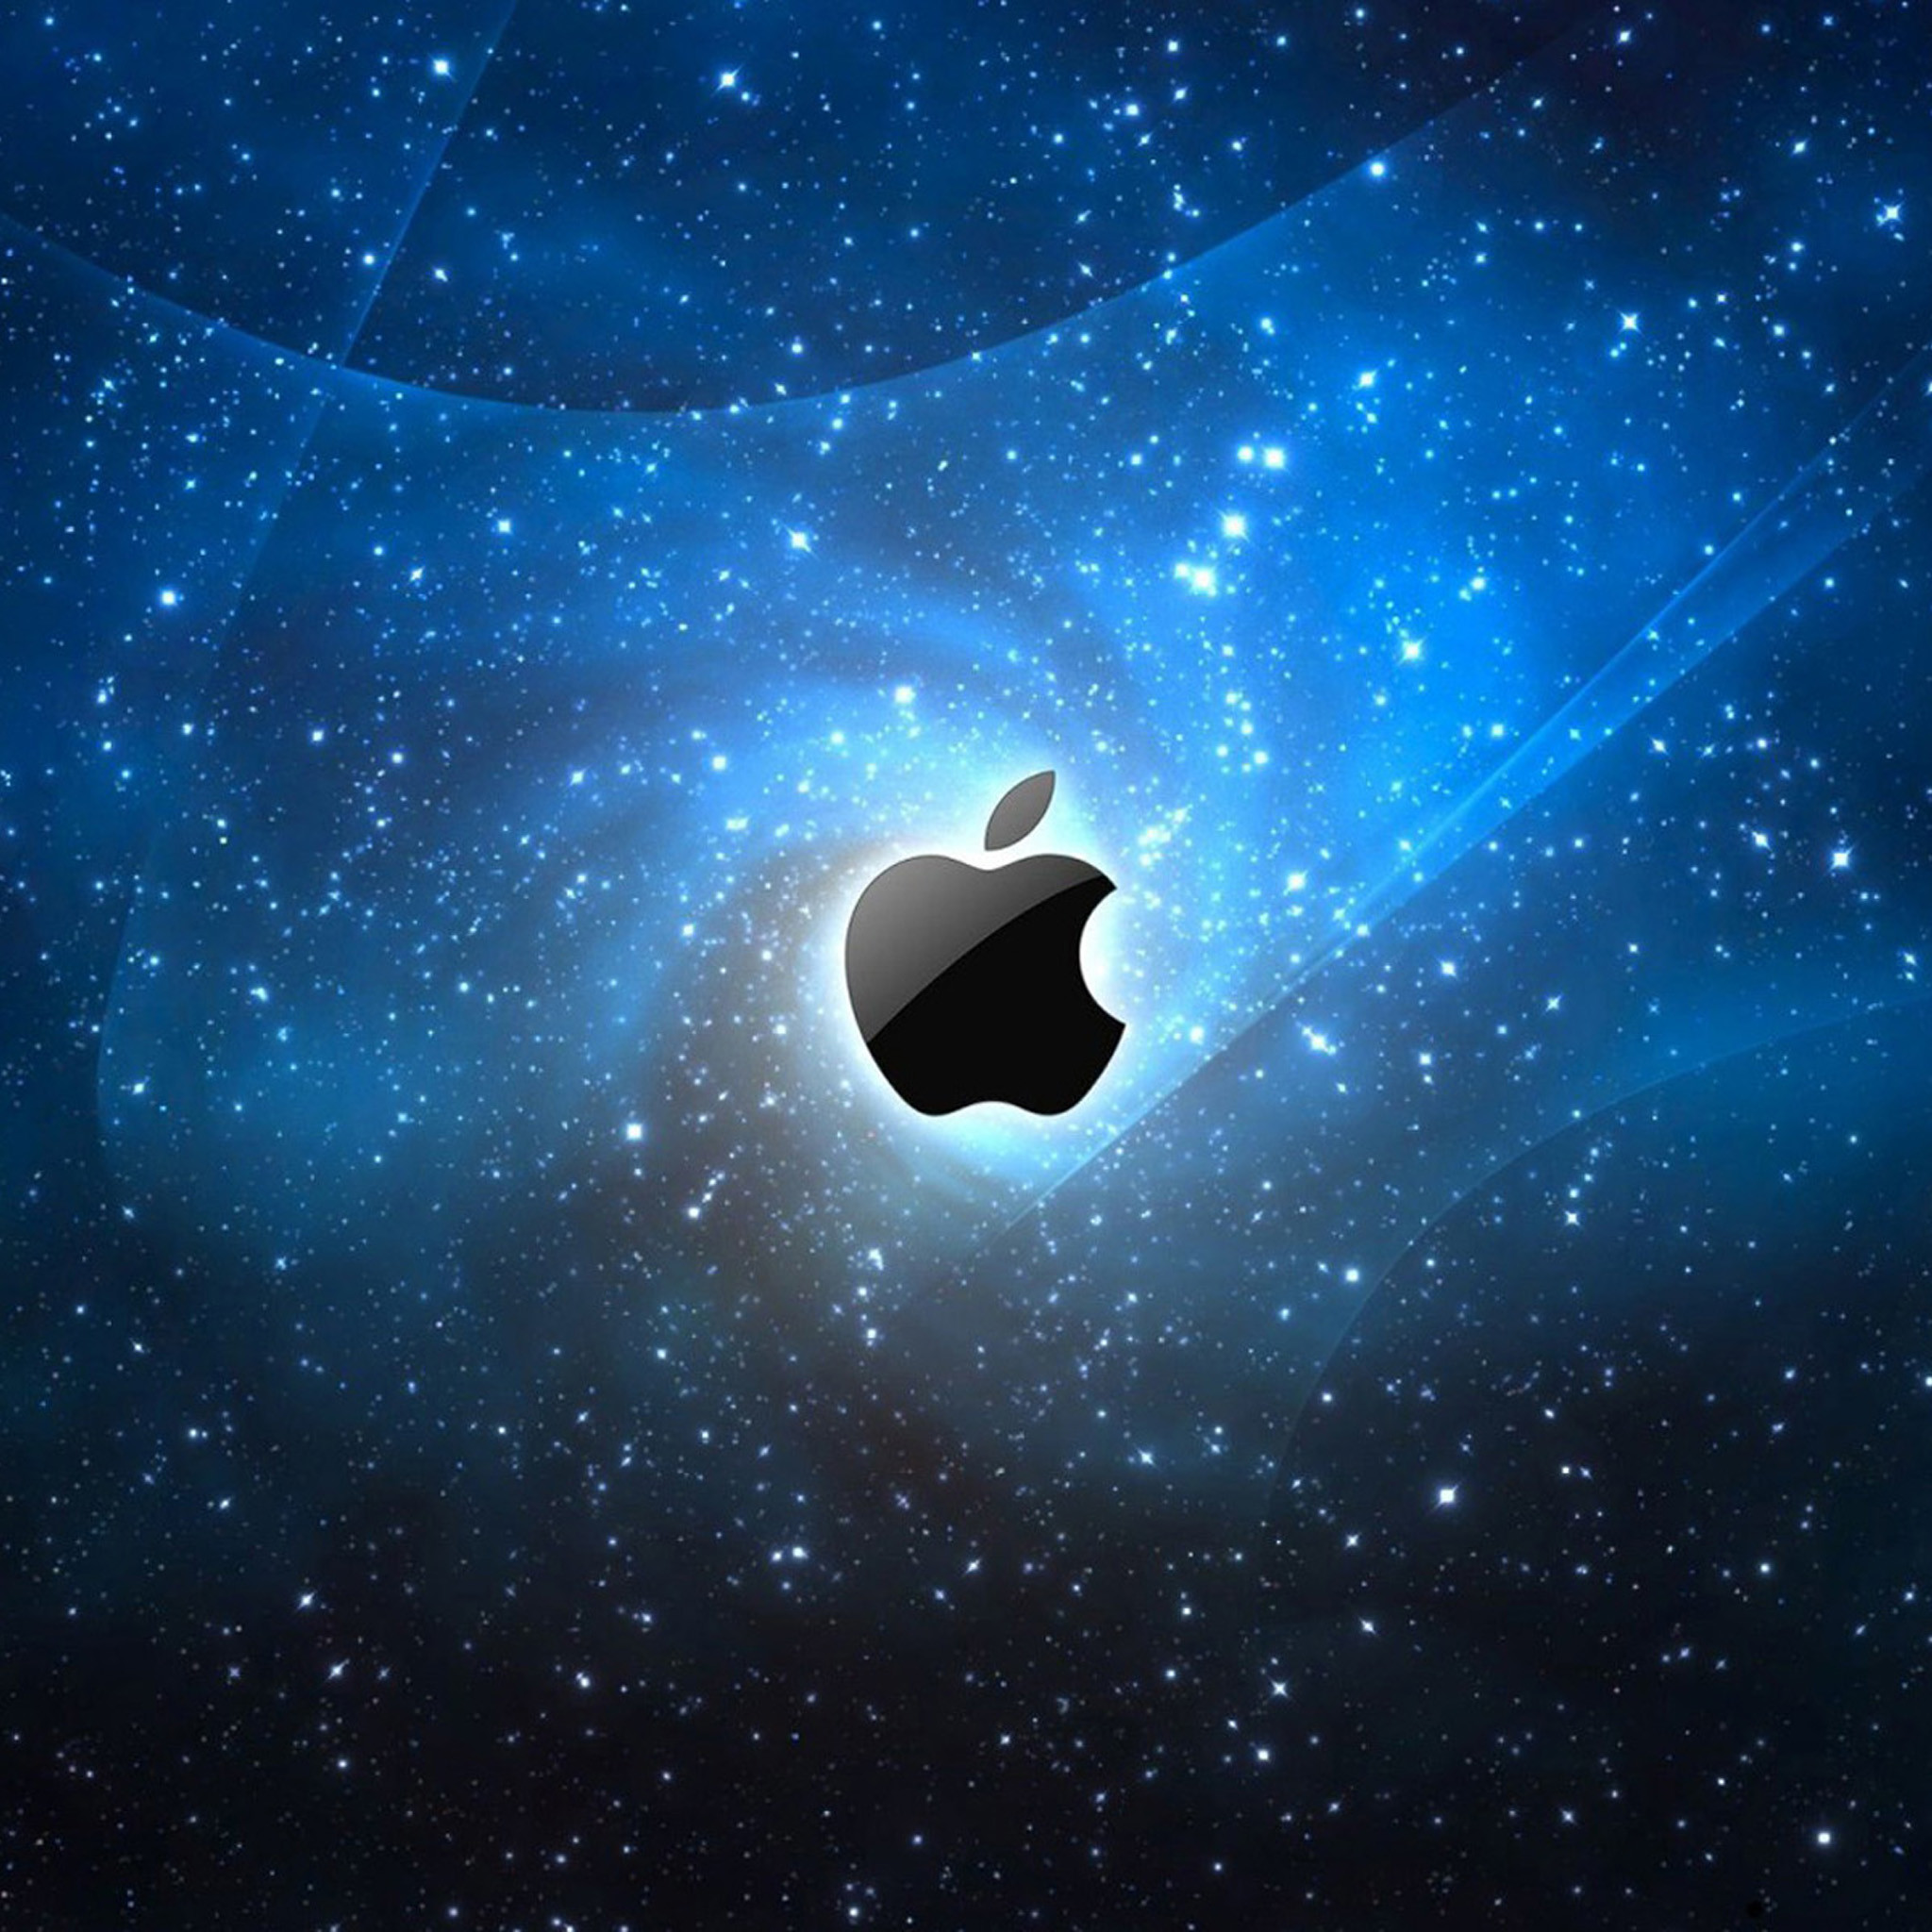 iPad Air Desktop Wallpaper Image